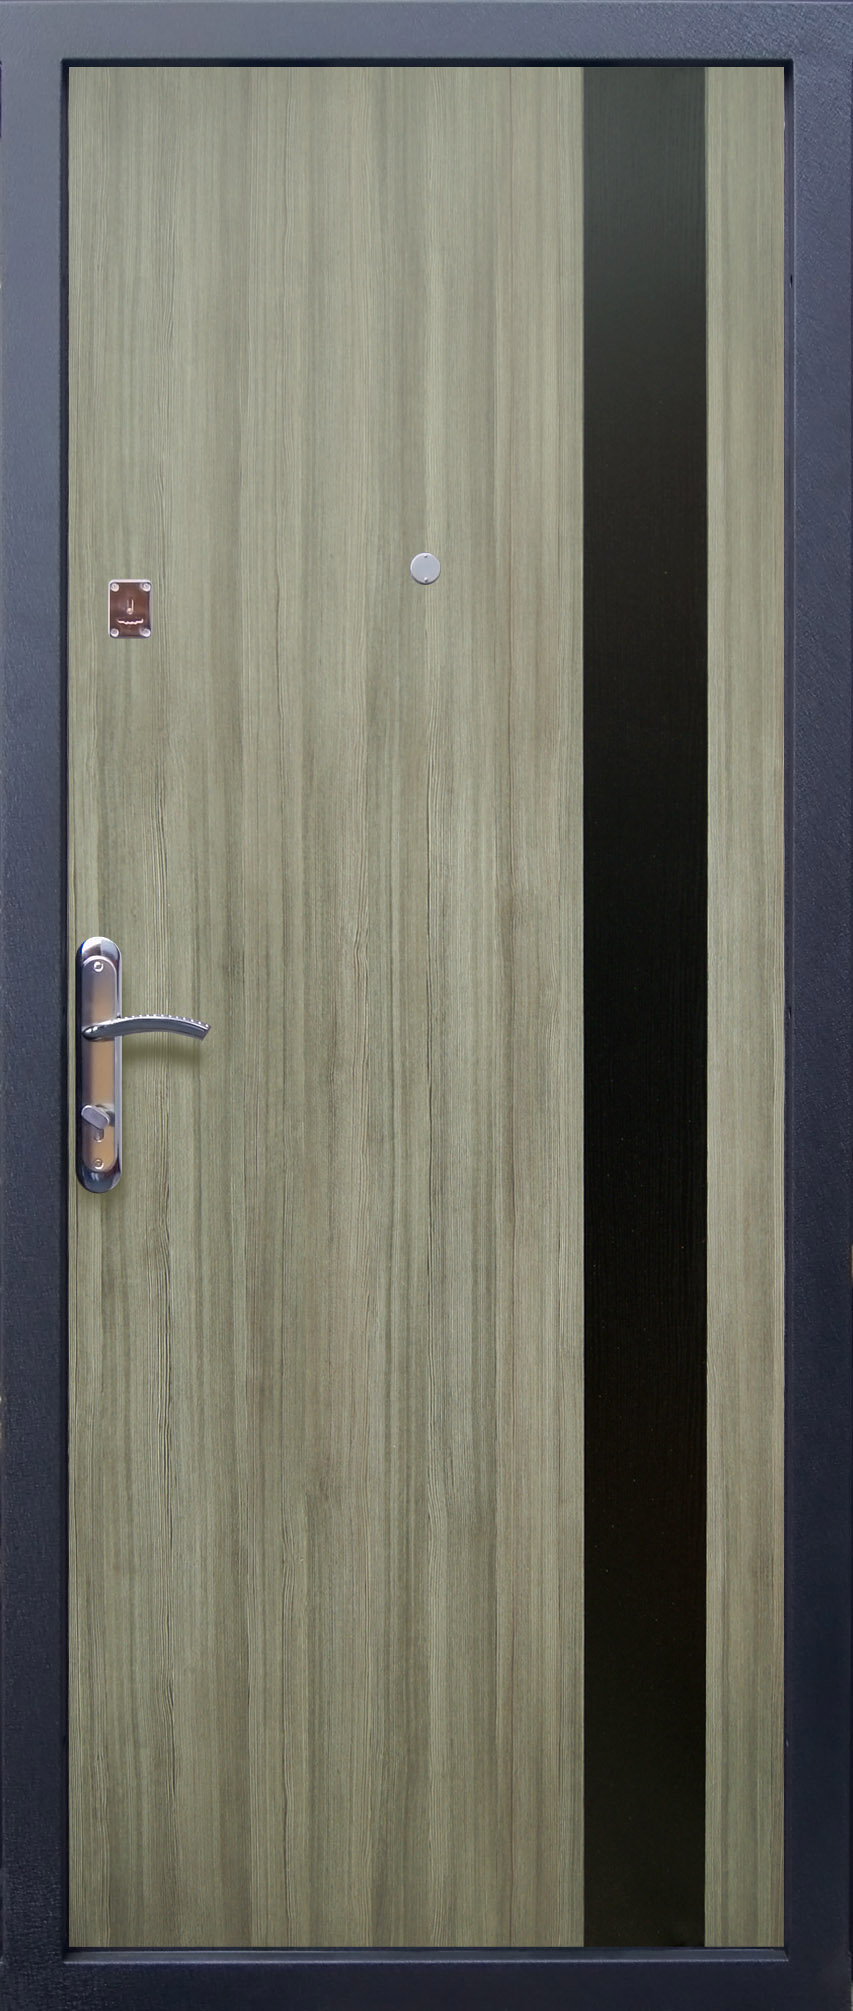 Оптимальная комплектация входной двери Максмид.